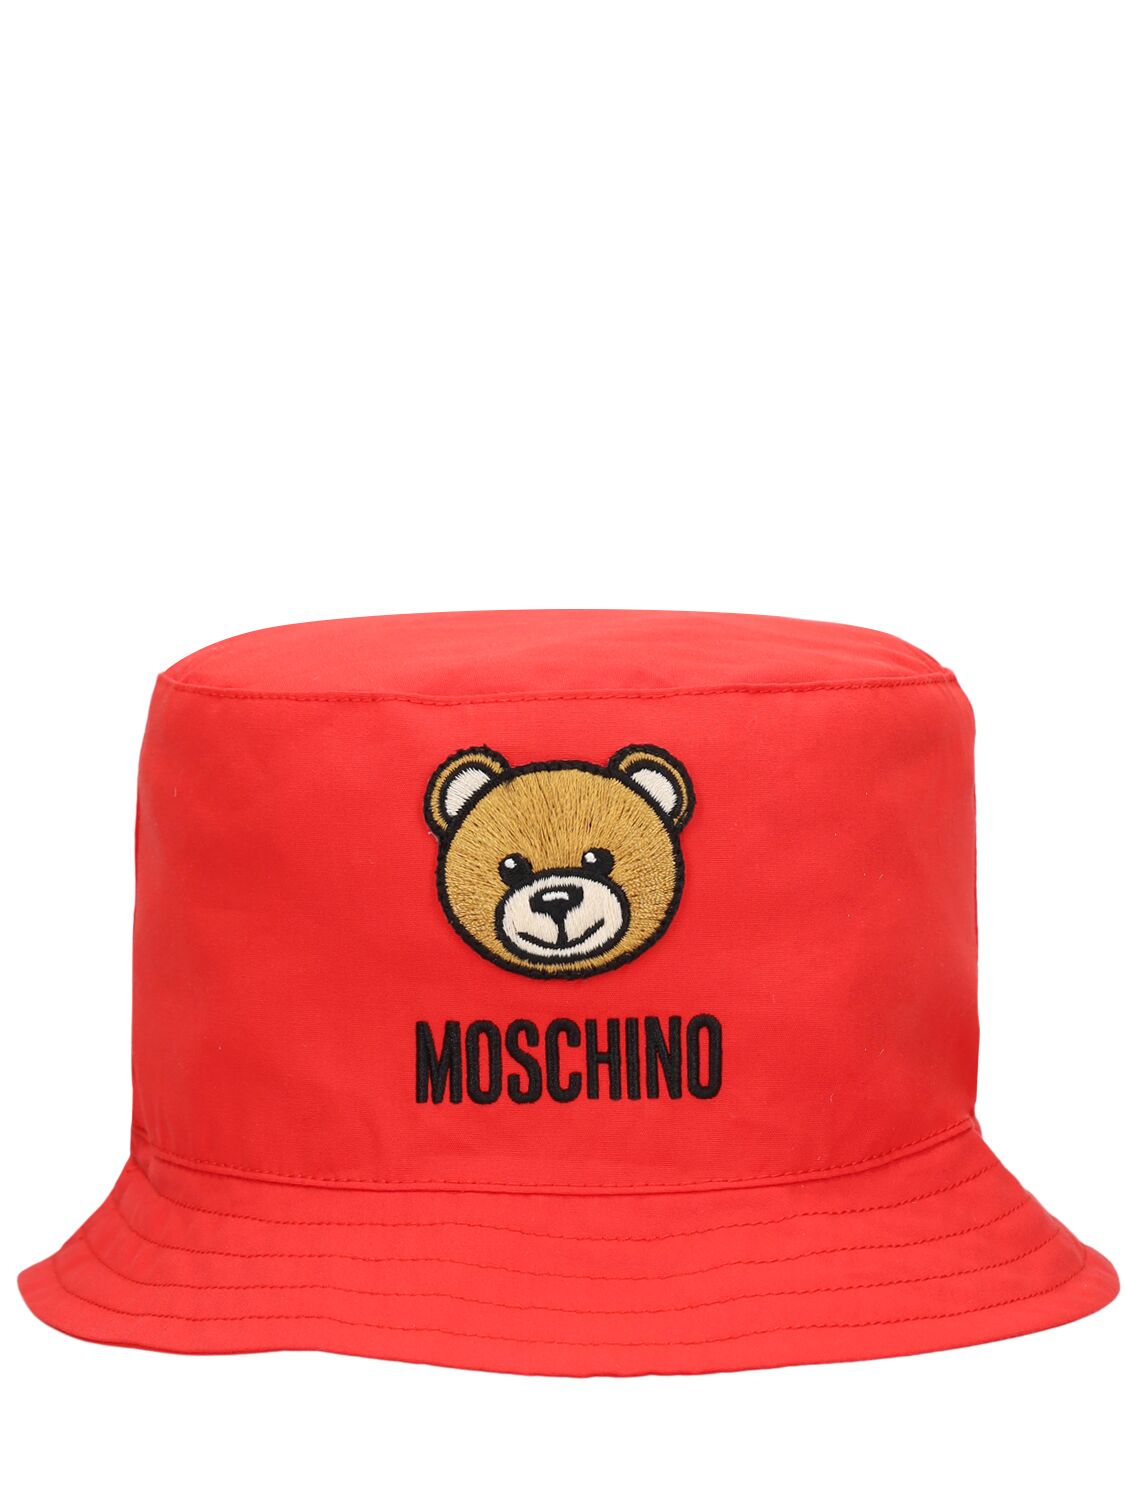 Moschino Kids' Cotton Poplin Bucket Hat In 레드